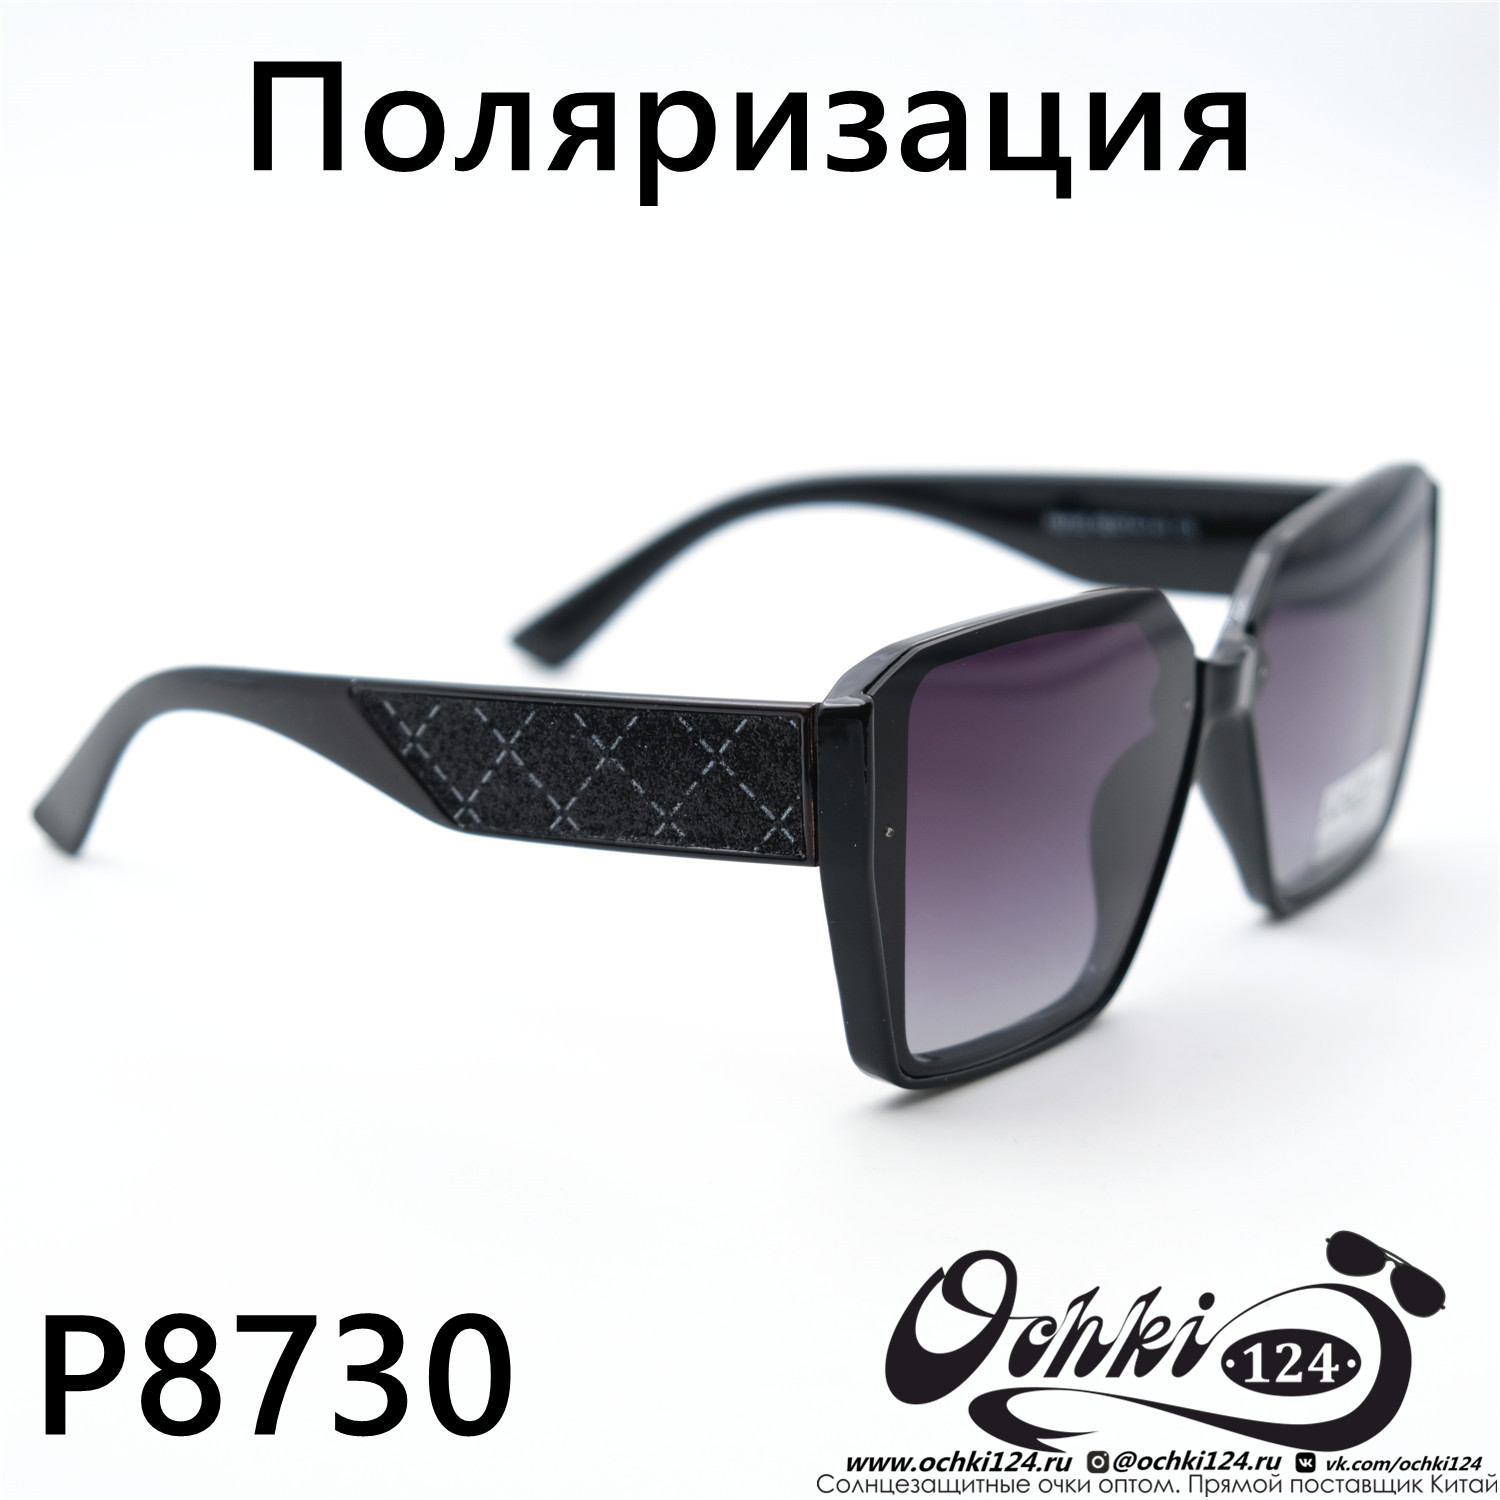  Солнцезащитные очки картинка Женские Caipai  Геометрические формы P8730-C3 